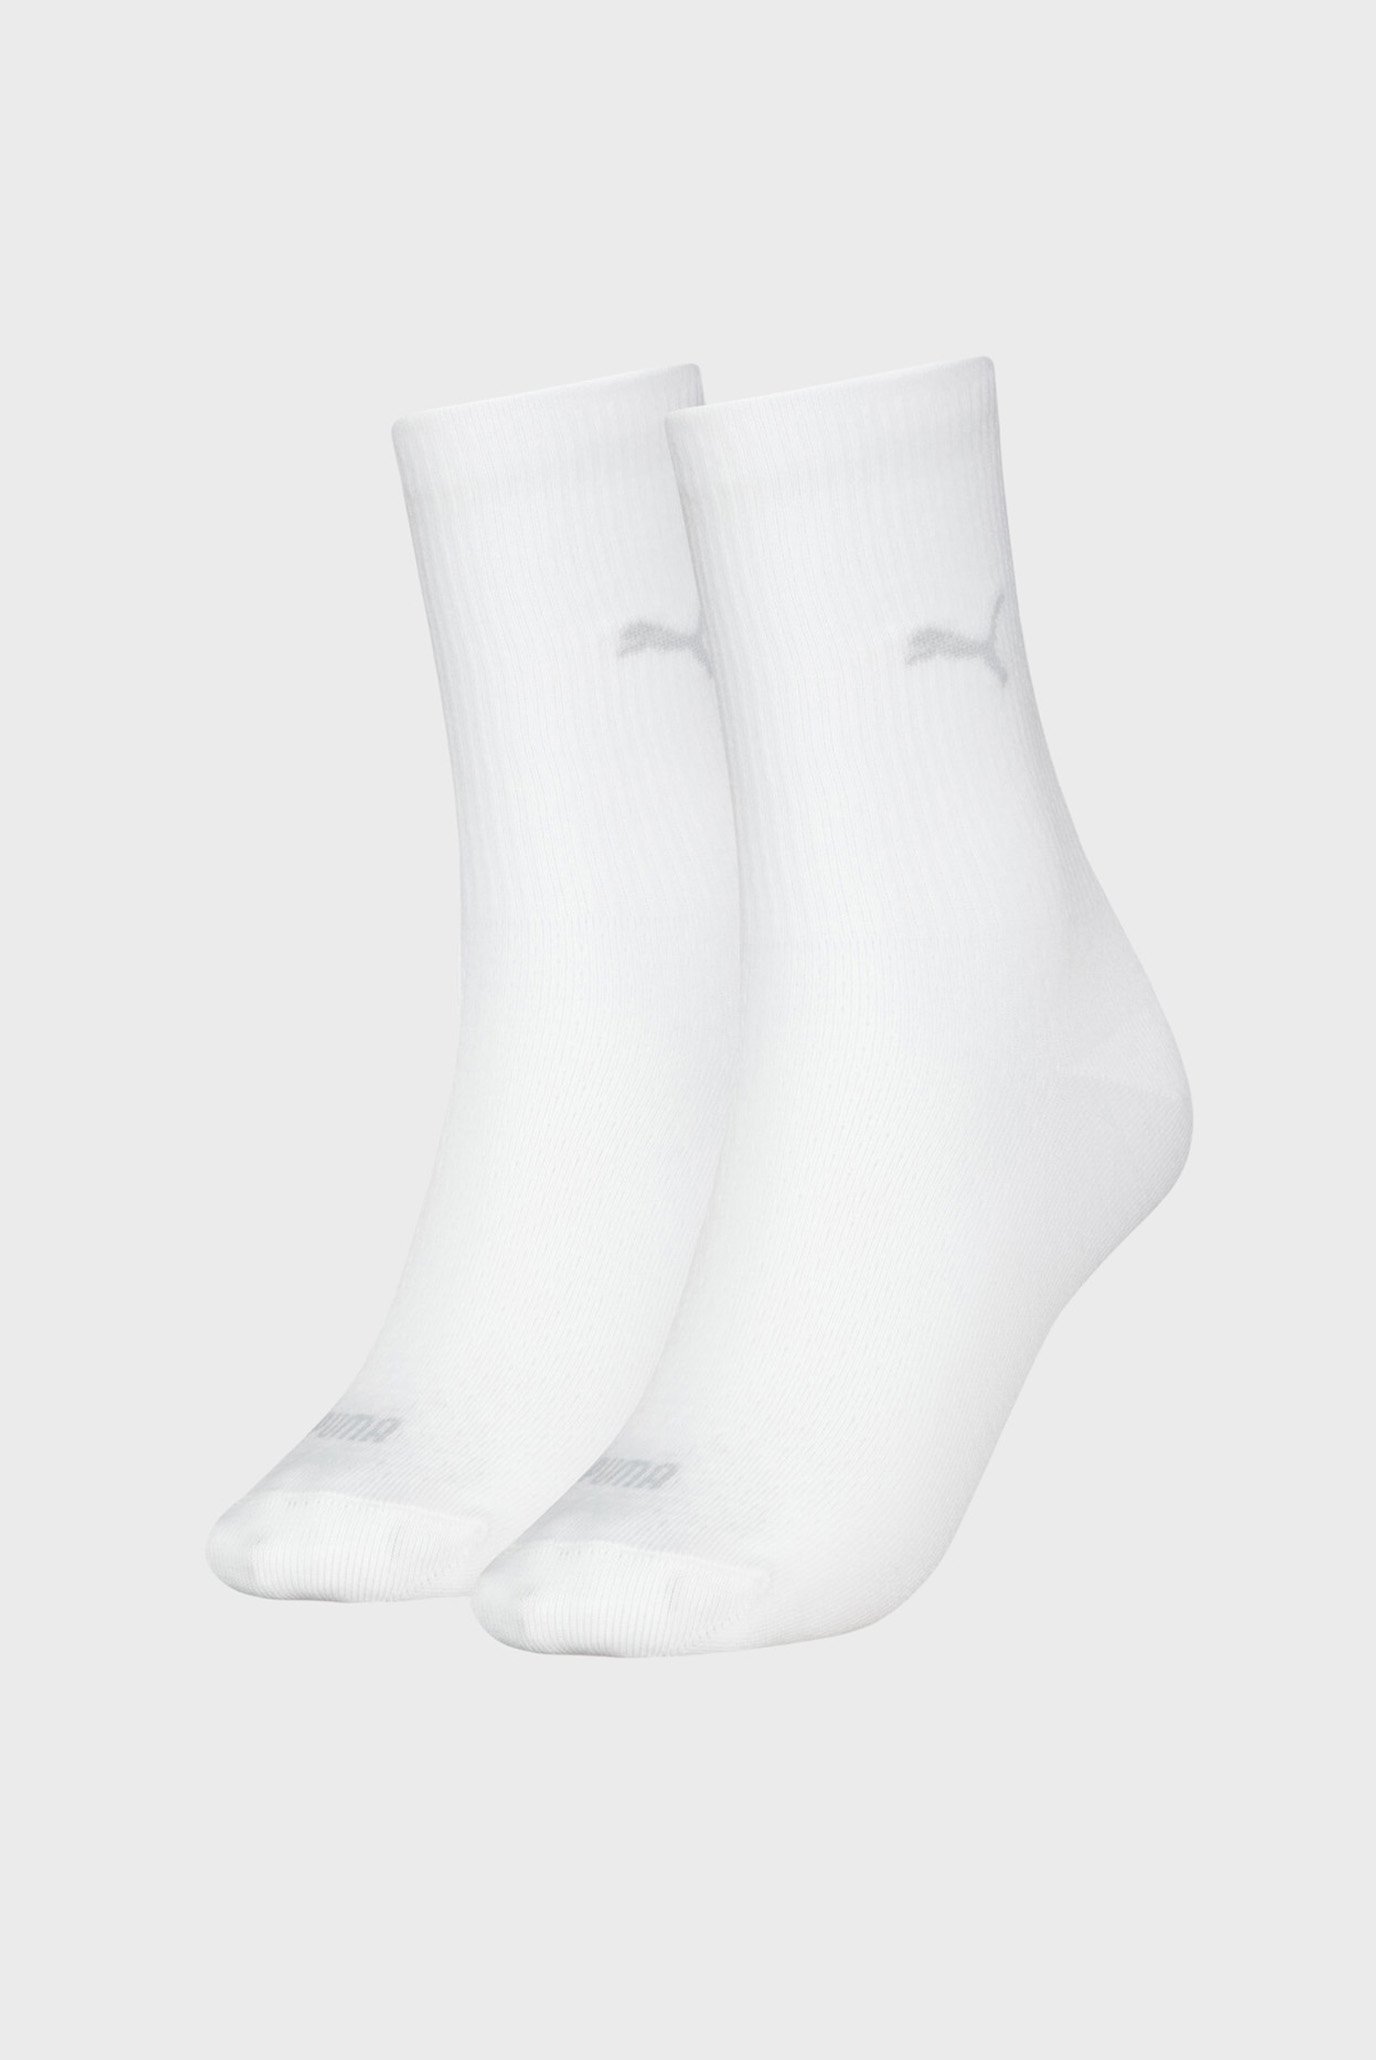 Жіночі білі шкарпетки (2 пари) PUMA Women's Classic Socks 2 Pack 1